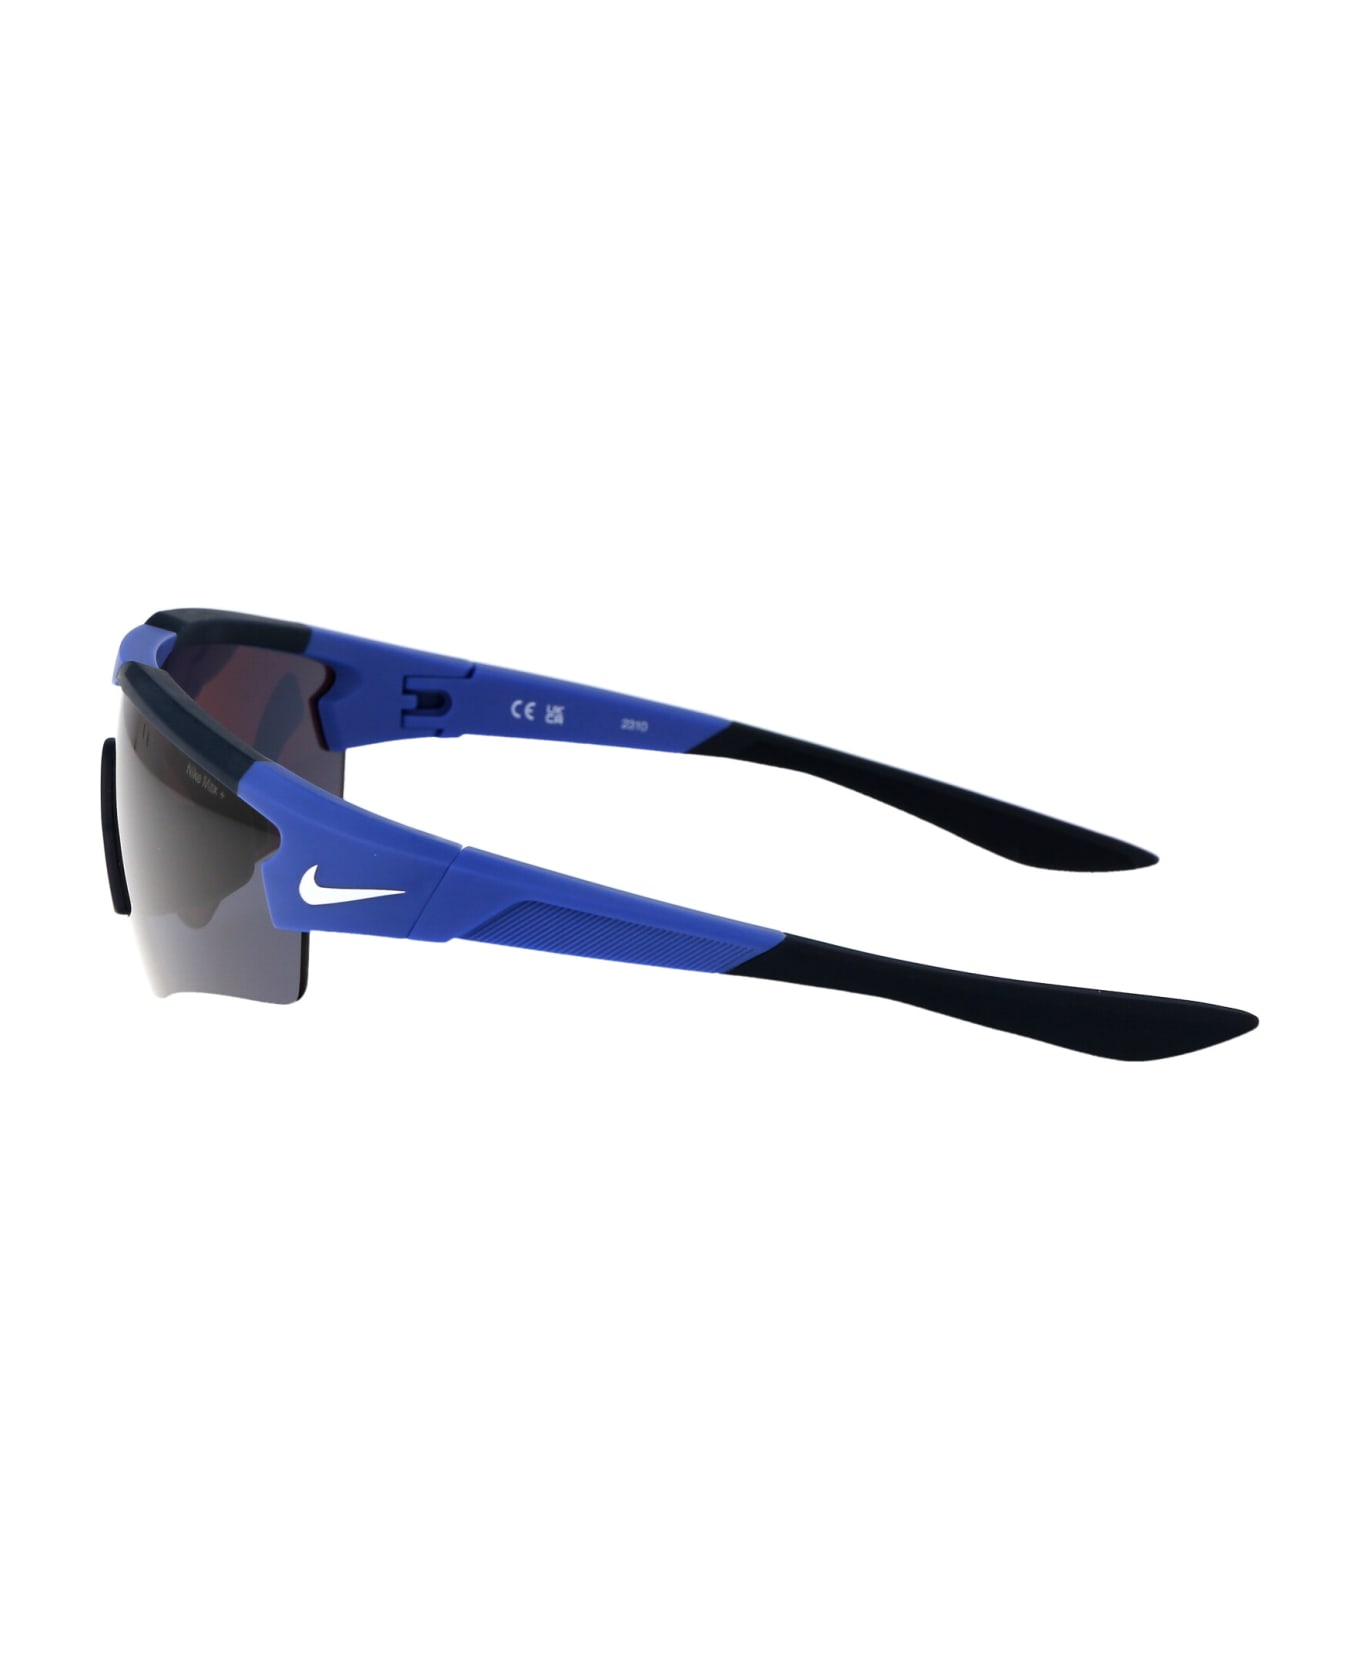 Nike Cloak Sunglasses - 480 NAVY MATTE GAME ROYAL サングラス